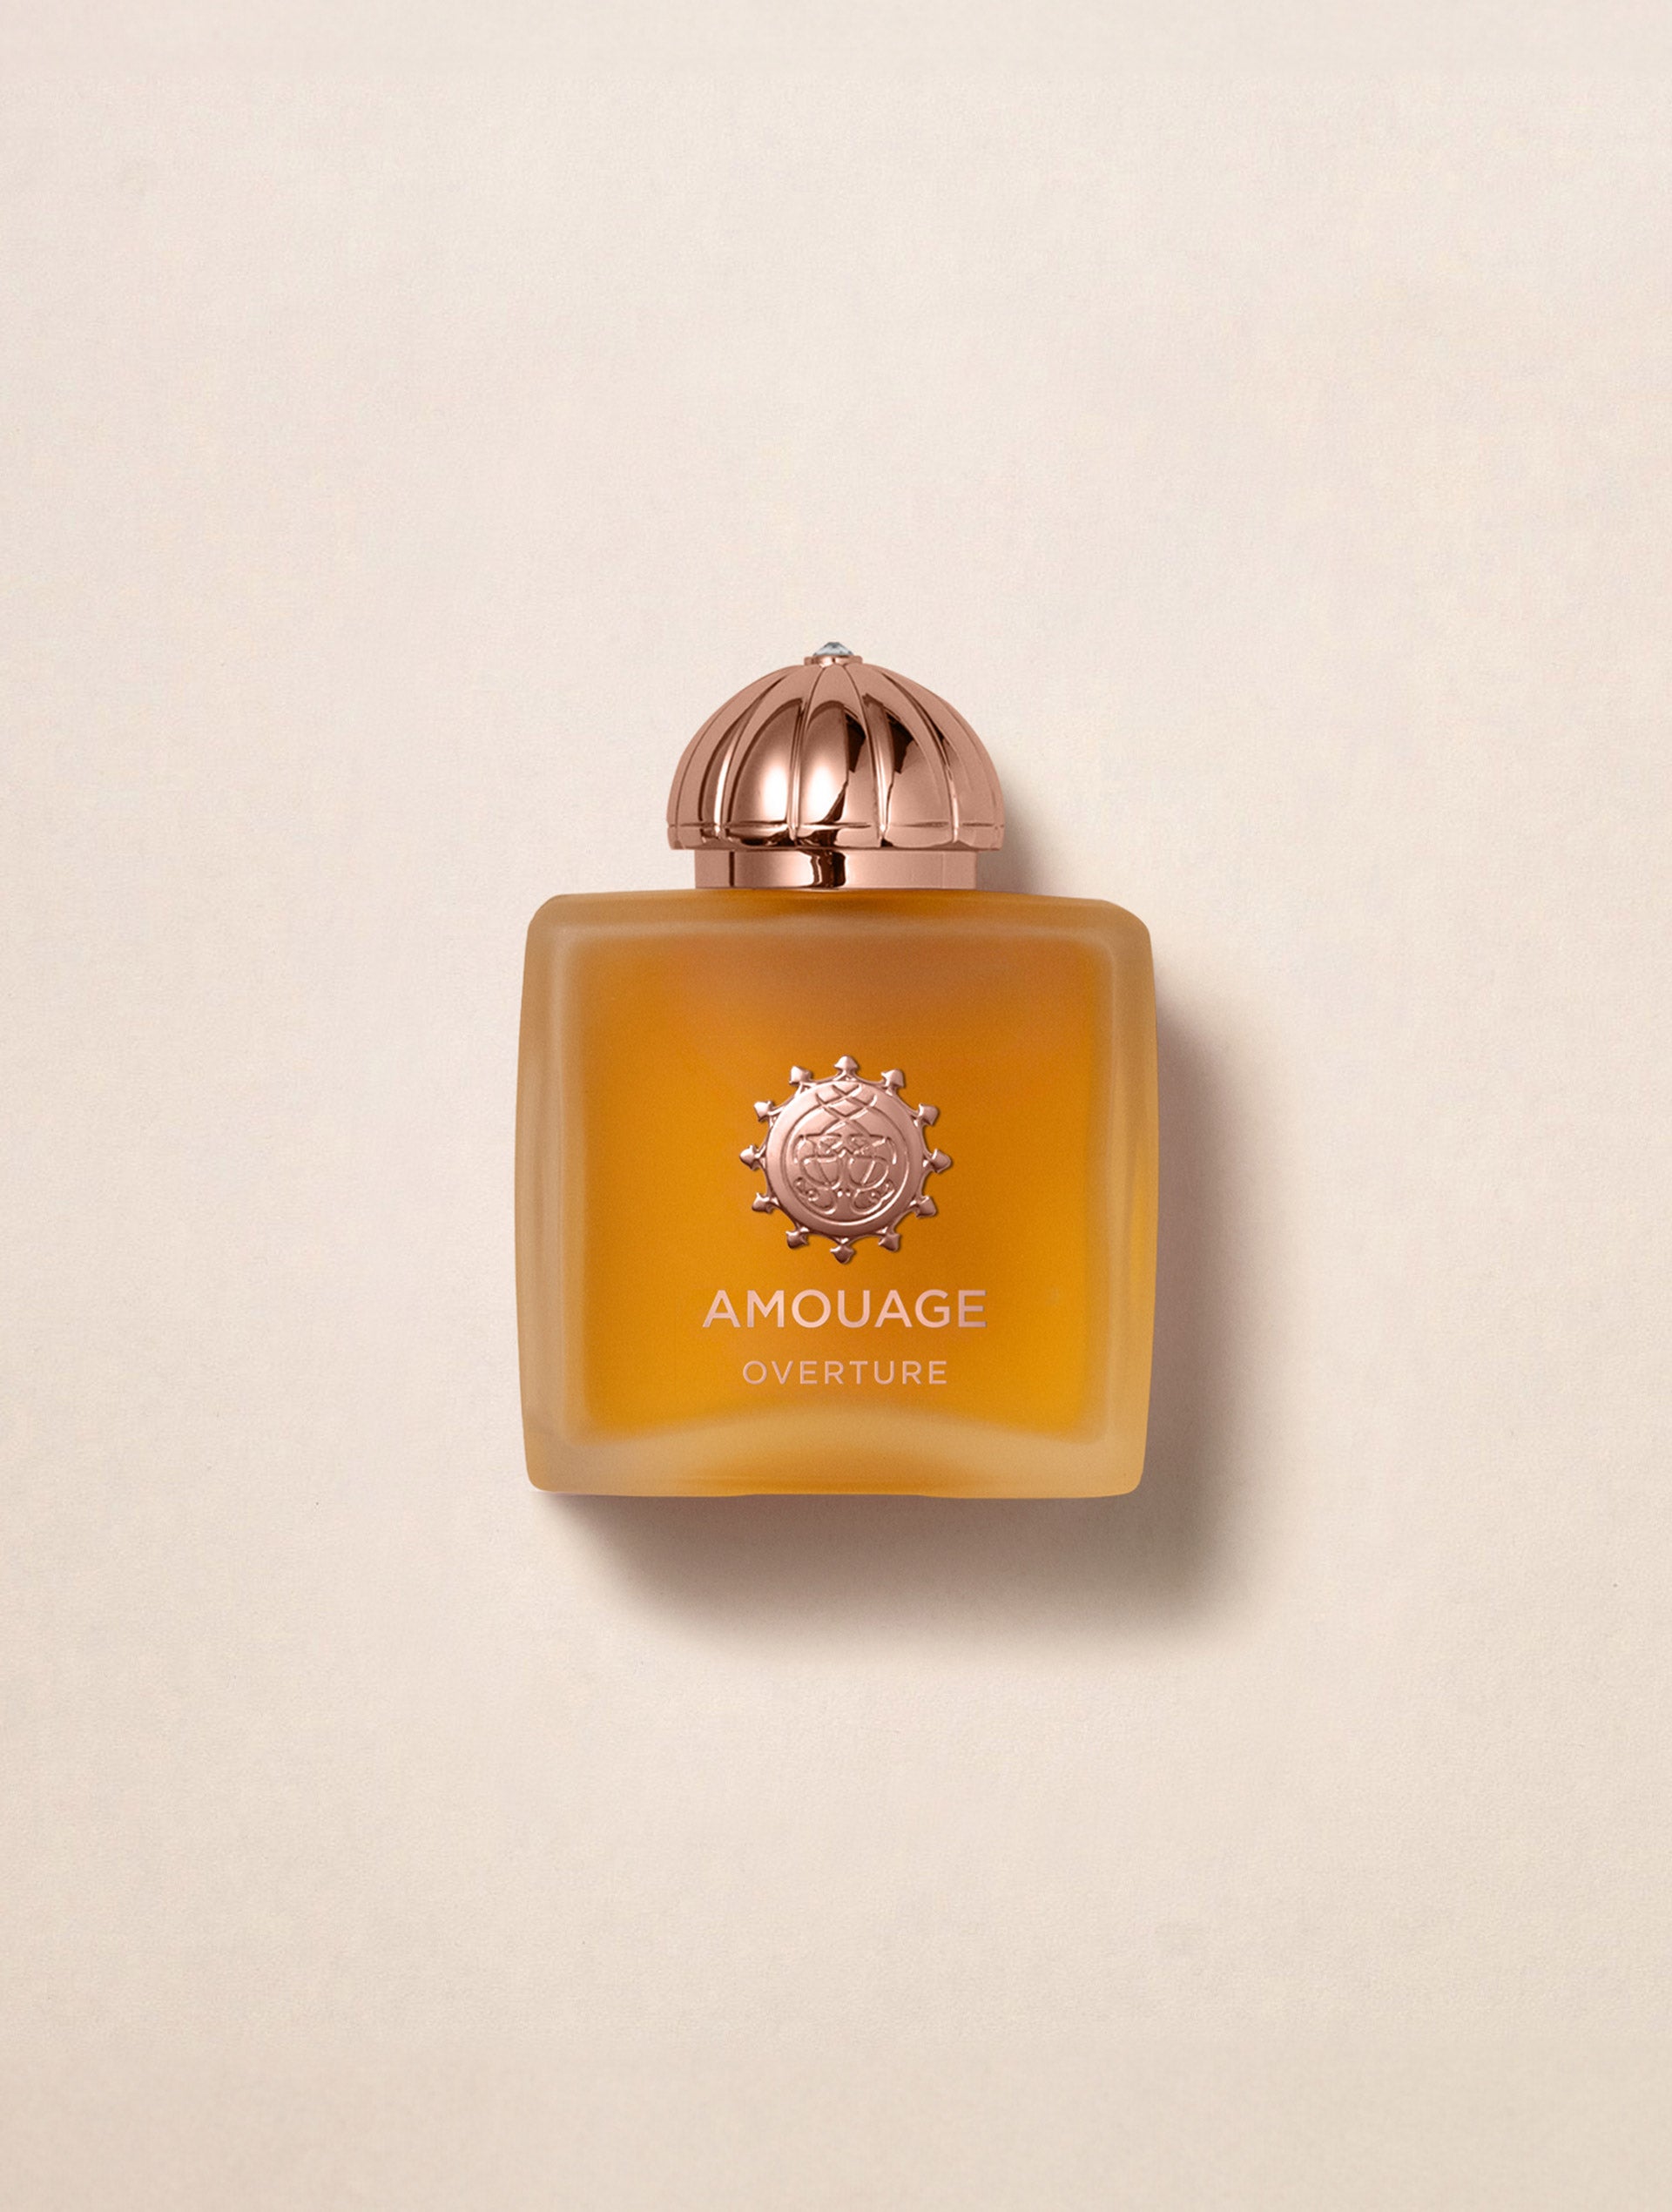 Eaux De Parfum – The House of Amouage